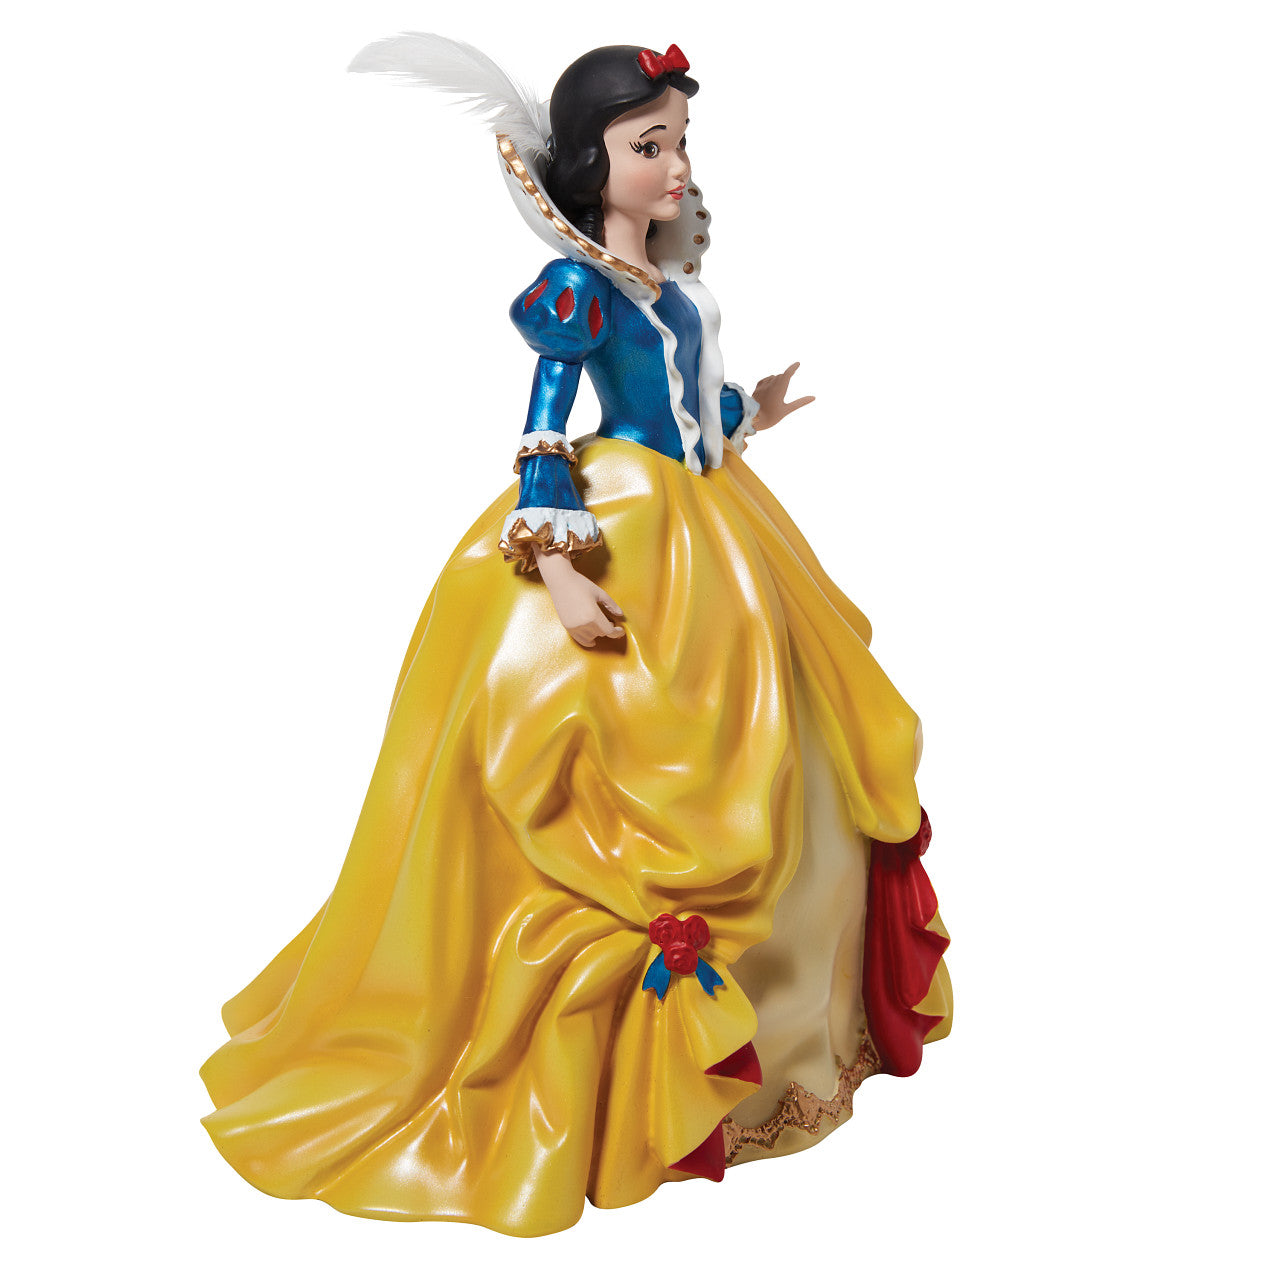 Snow White Rococo Figurine